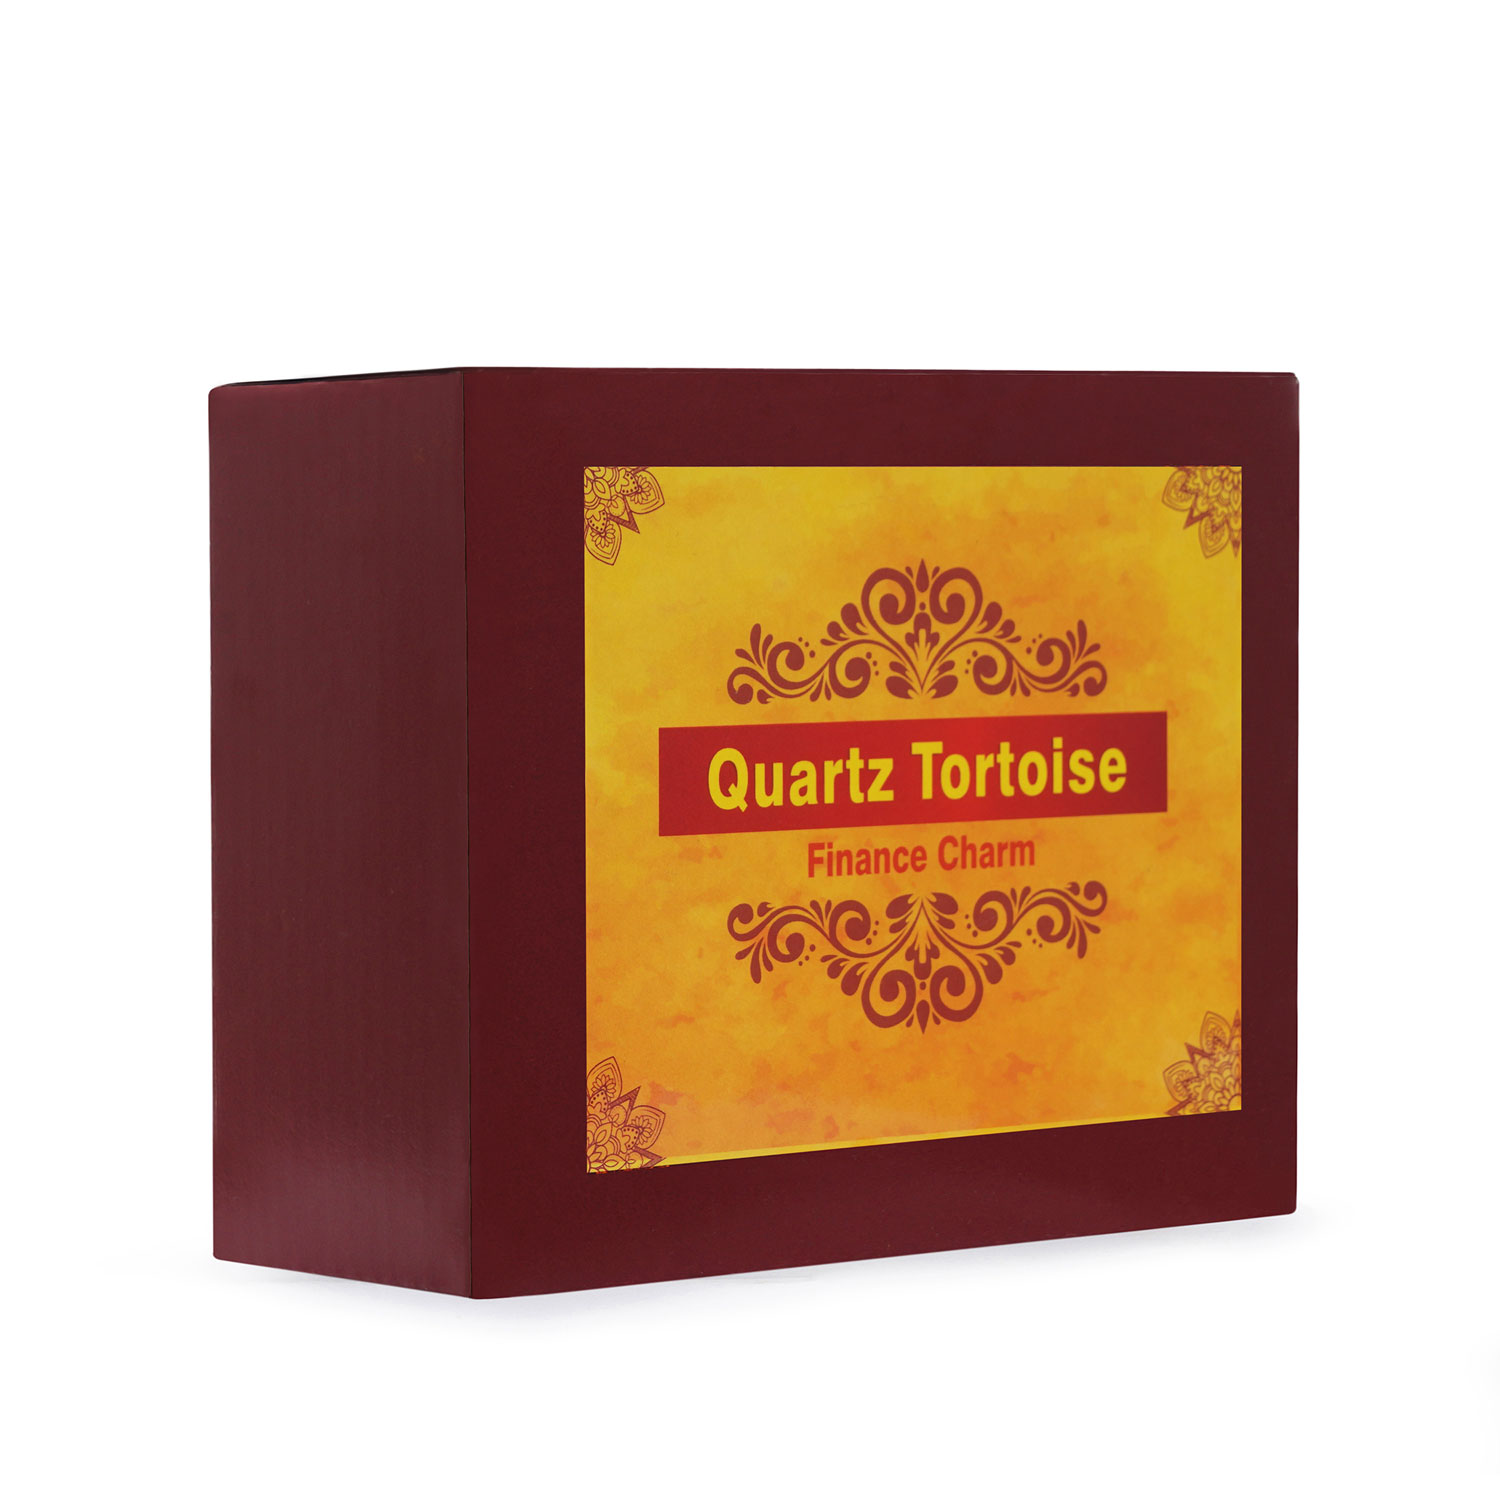 Quartz Tortoise